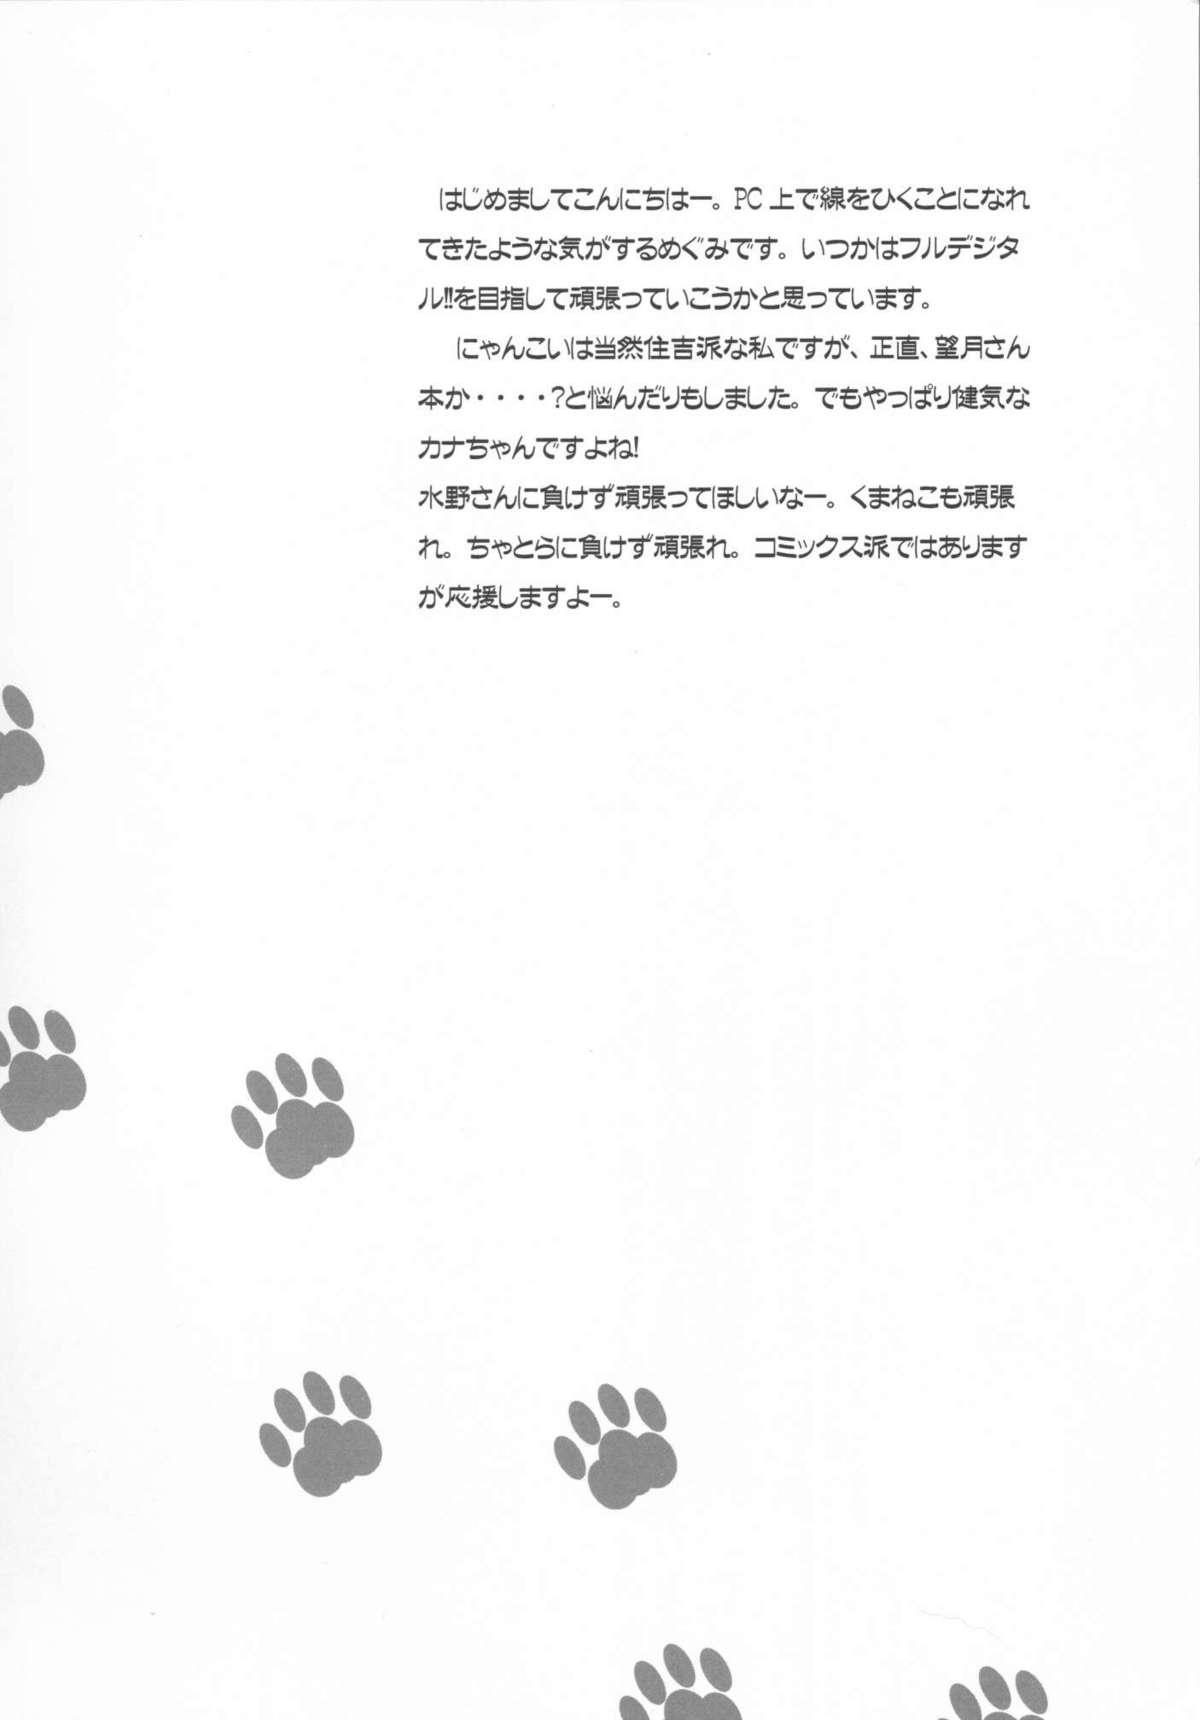 Strapon Nakaochi Karubi ni Kaburitsuki - Nyan koi Putinha - Page 3